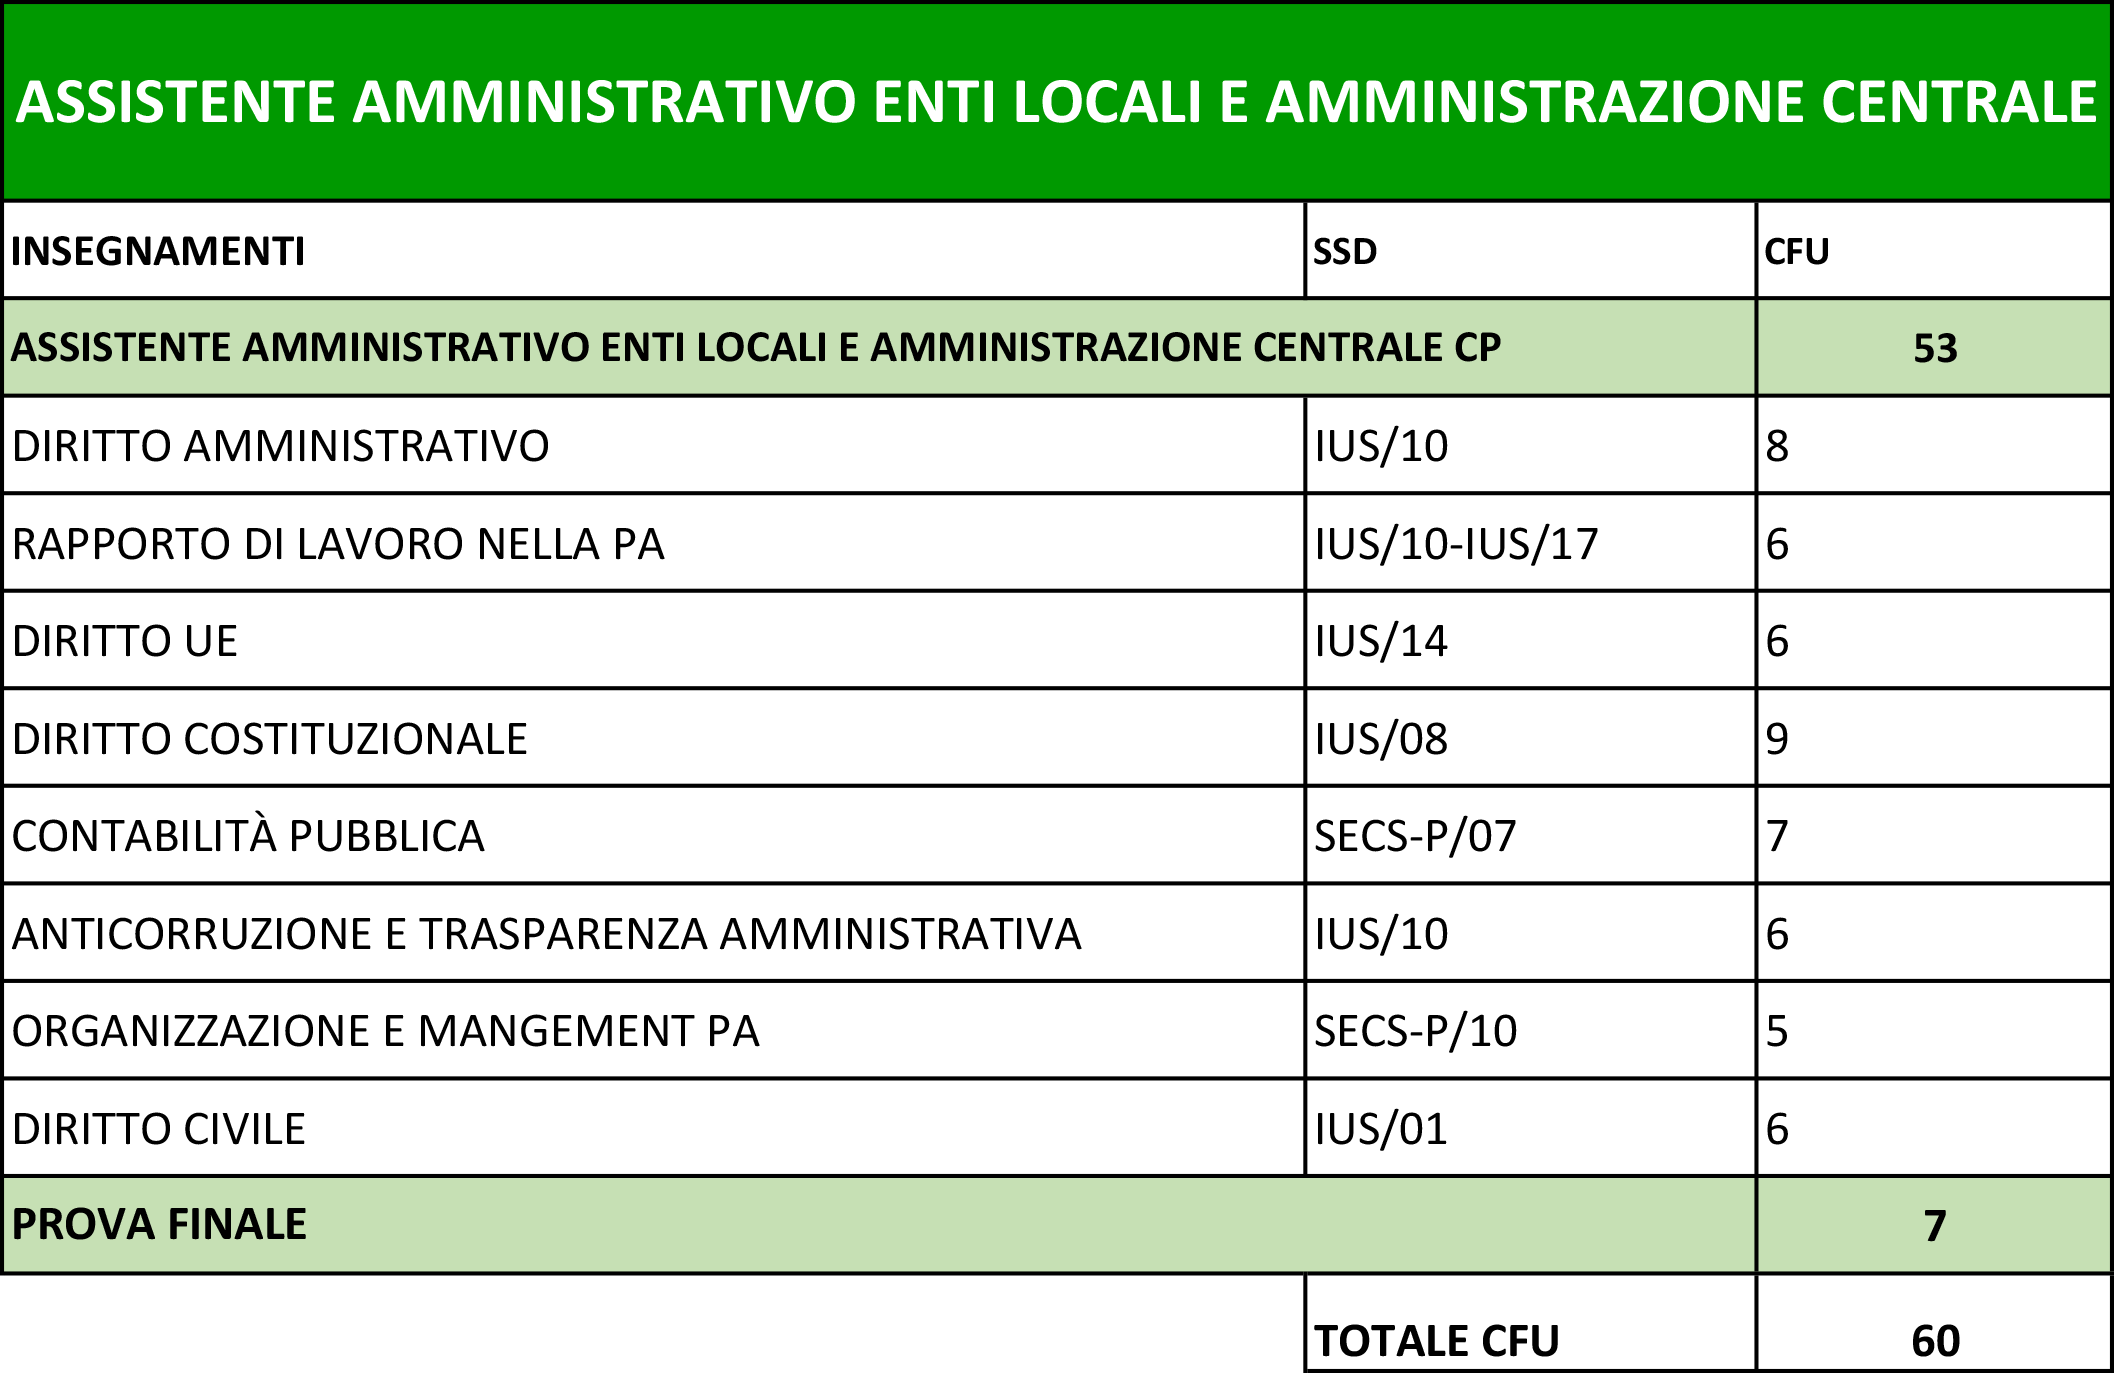 PDS_Assistente amministrativo enti locali e amministrazione centrale